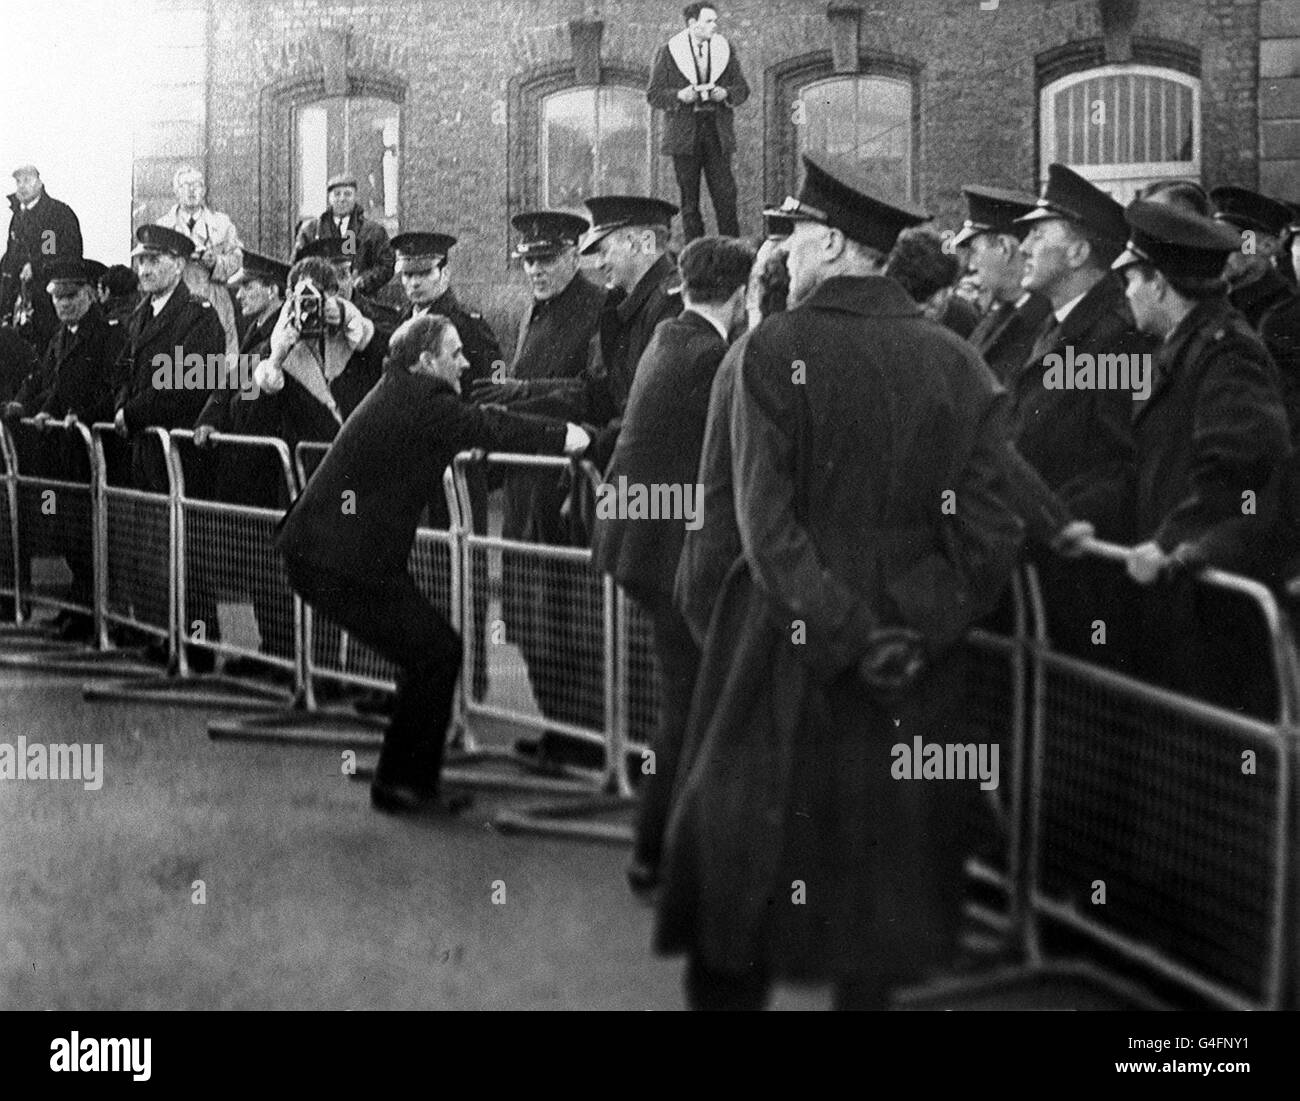 PA NEWS PHOTO 17/11/68 LA SCÈNE À LONDONDERRY EN IRLANDE DU NORD PENDANT LES MANIFESTATIONS DE L'HOMME Banque D'Images